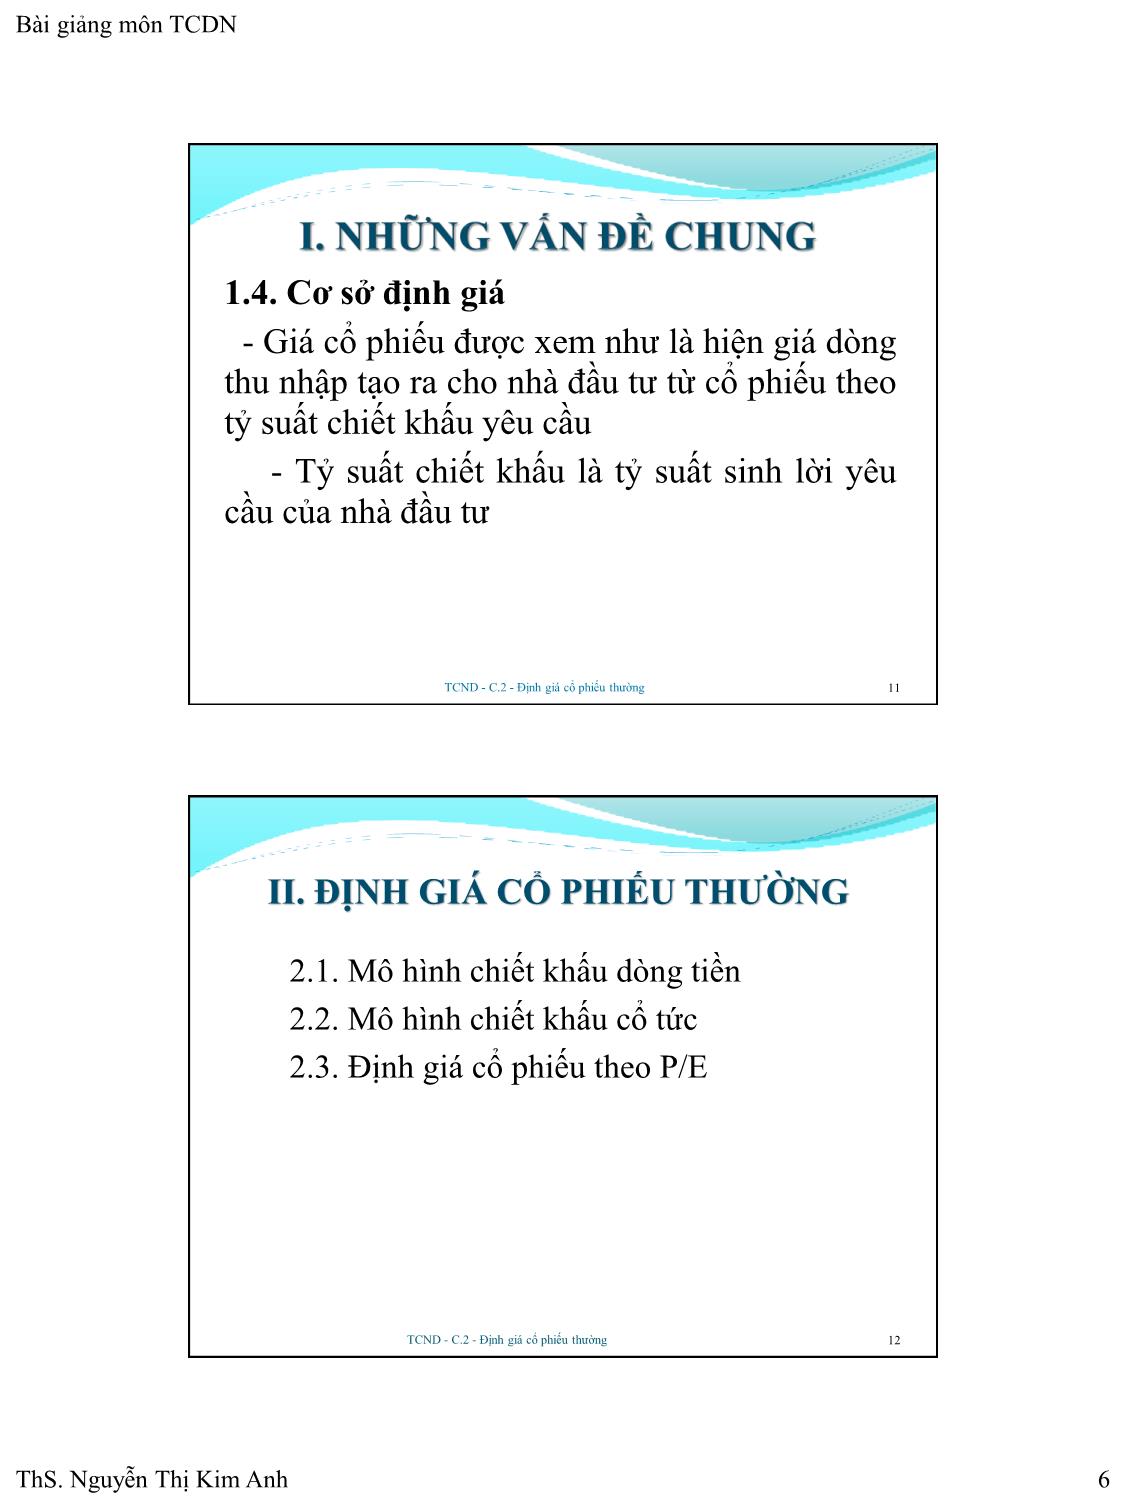 Bài giảng Tài chính doanh nghiệp - Chương 2: Định giá cổ phiếu thường - Nguyễn Thị Kim Anh trang 6